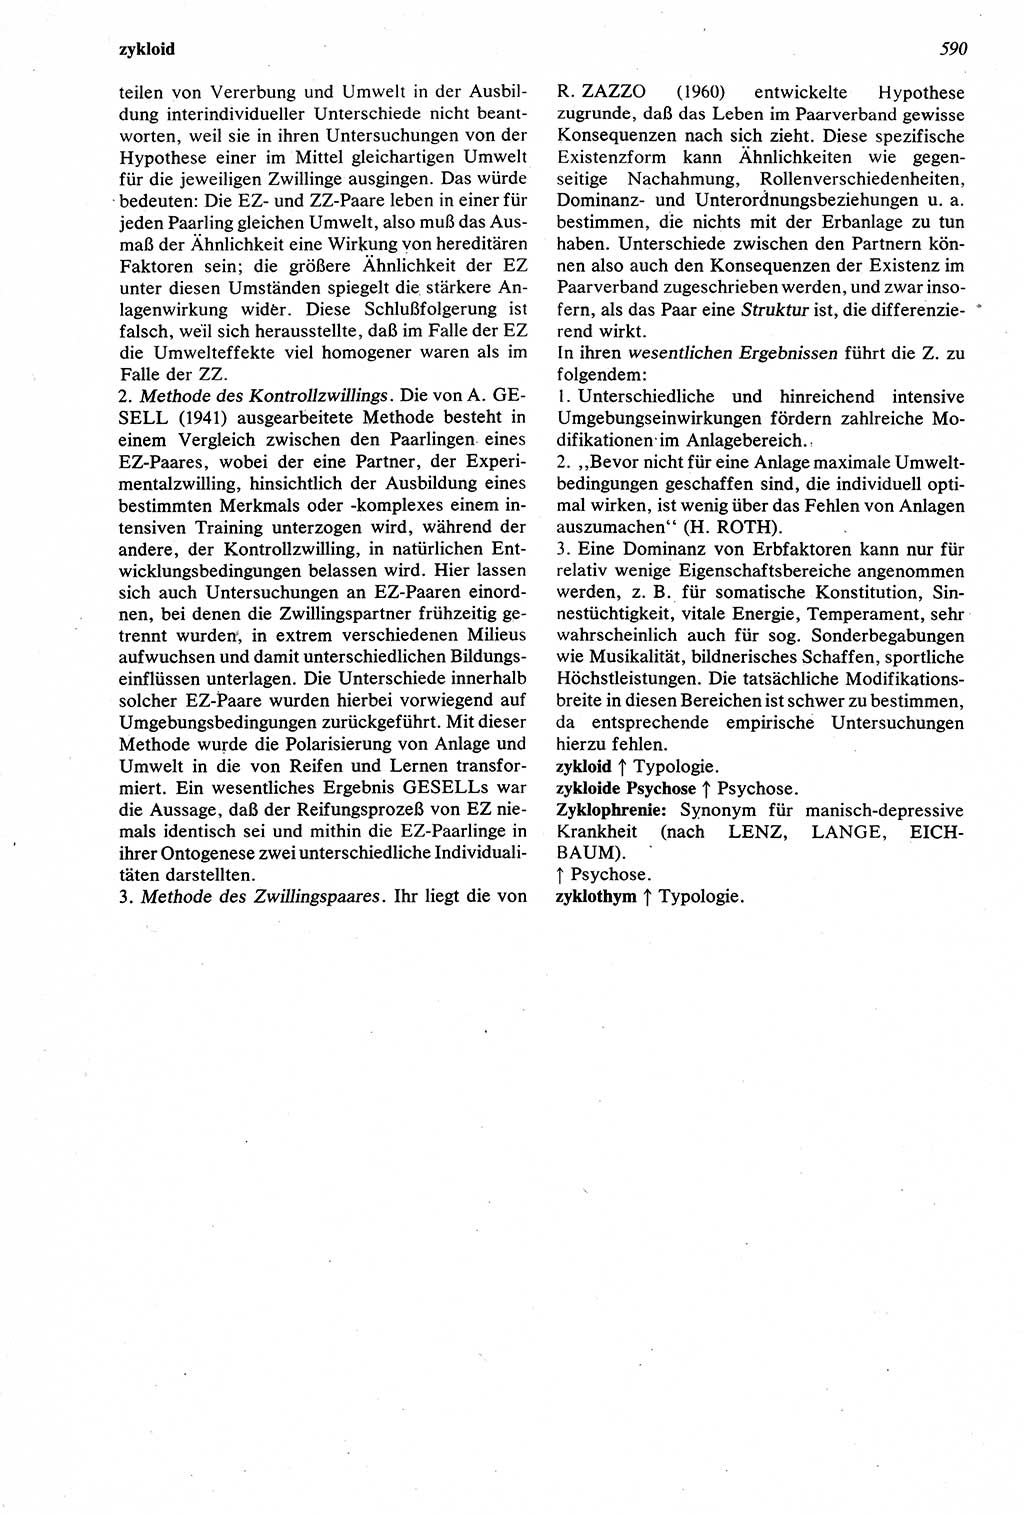 Wörterbuch der Psychologie [Deutsche Demokratische Republik (DDR)] 1976, Seite 590 (Wb. Psych. DDR 1976, S. 590)